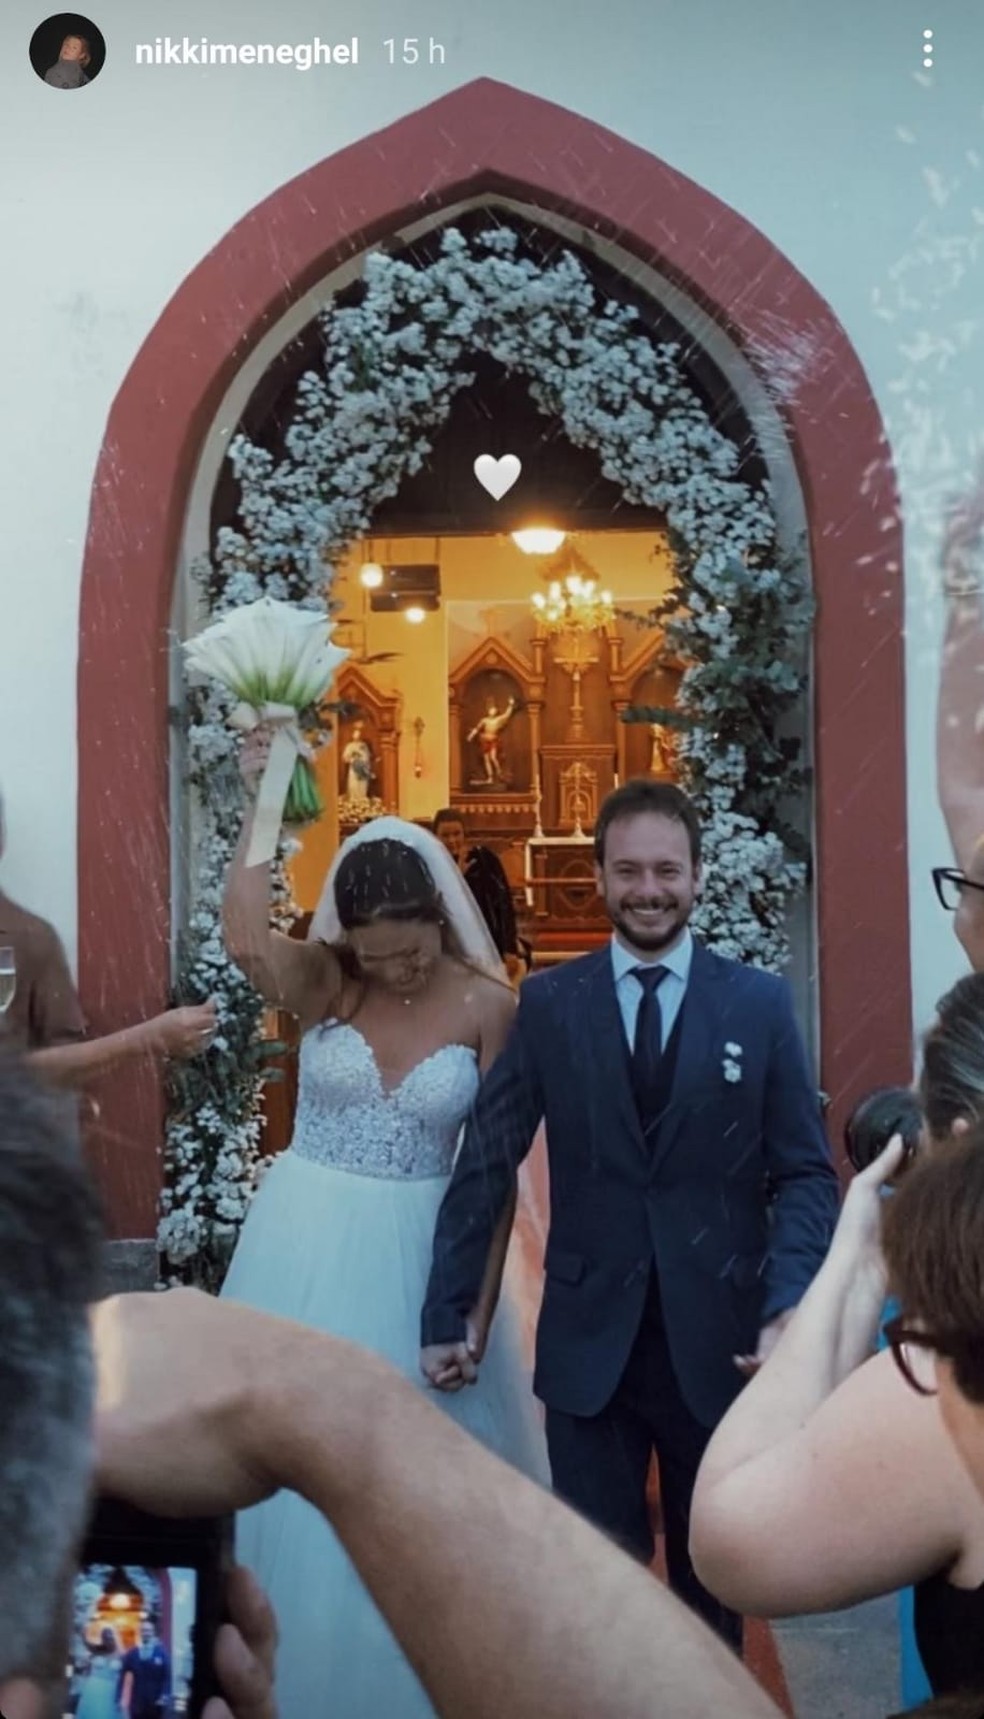 Nikki Meneghel compartilha fotos do casamento de sua irmã Paloma Meneguel — Foto: Reprodução